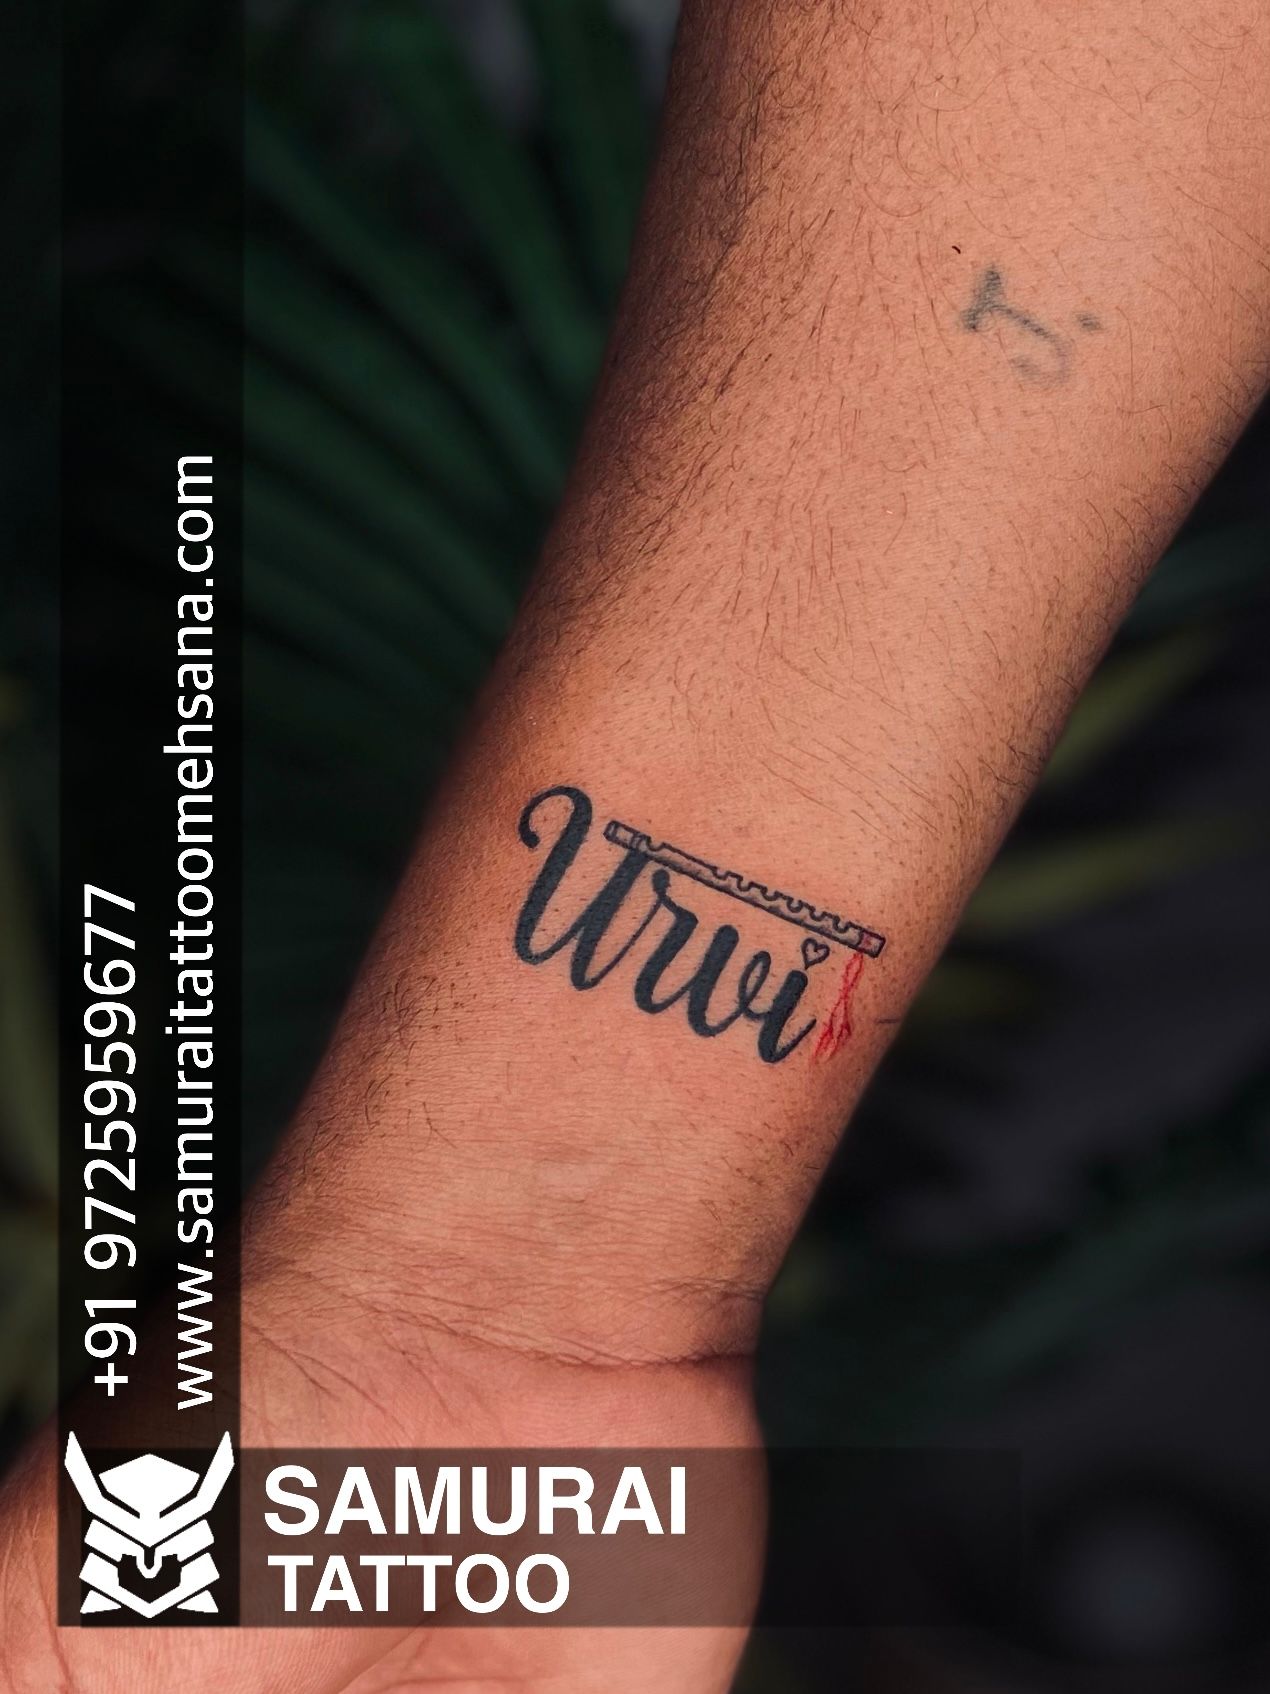 ANJU Beauty academy Tattoo class & tattoo work 💪 Kanchipuram  8778001510#ink #inked #art #tattooartist #tattooart #tattooed #tattoolife…  | Instagram